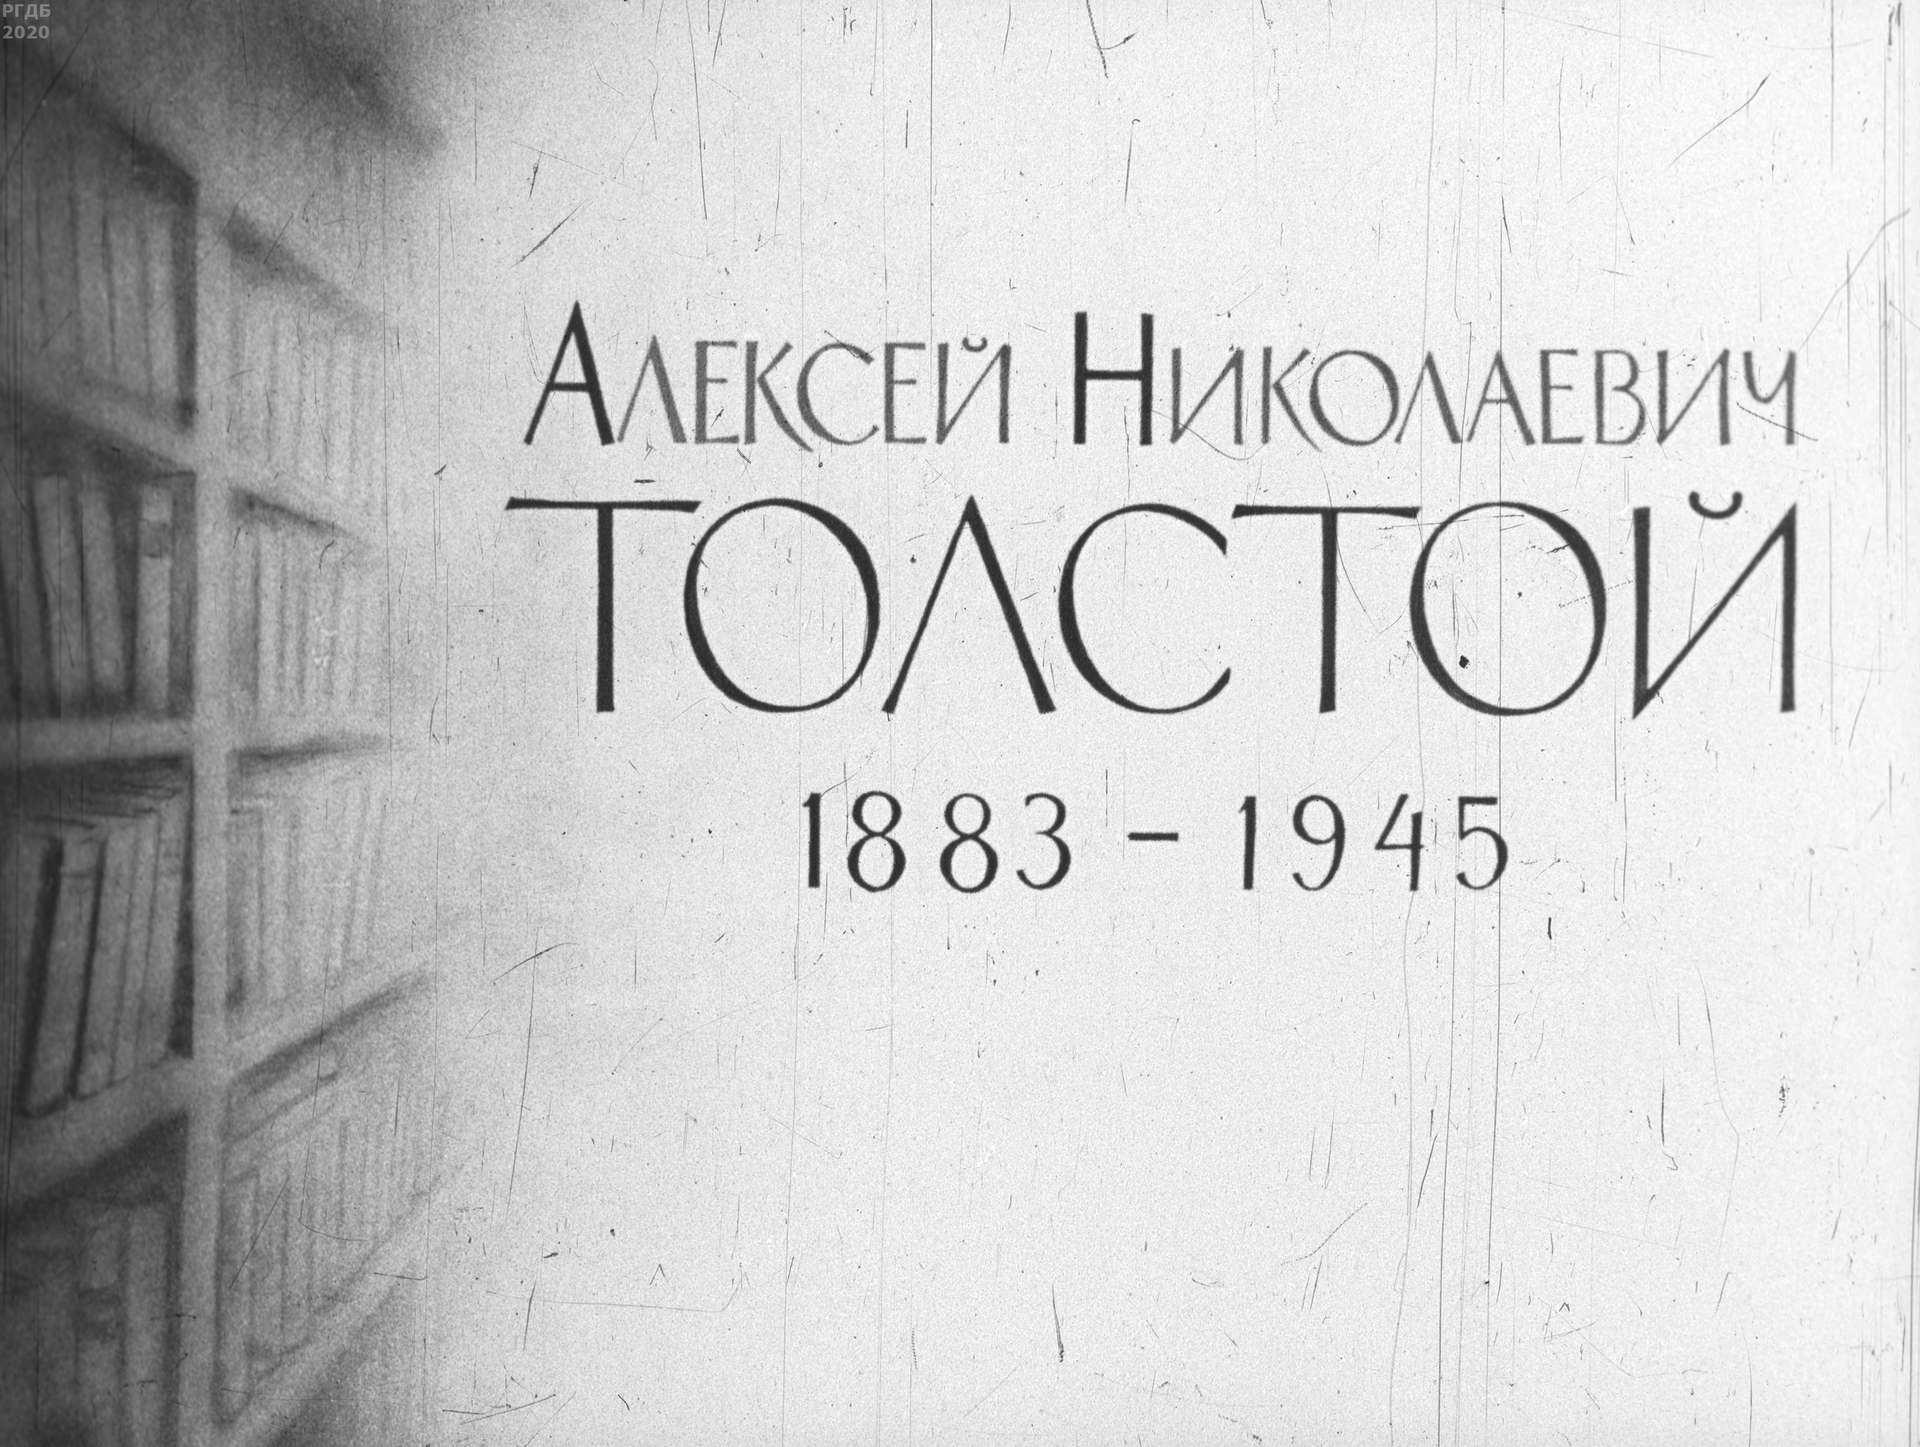 Миропольская Е. - Алексей Николаевич Толстой. 1883-1945 - 1963